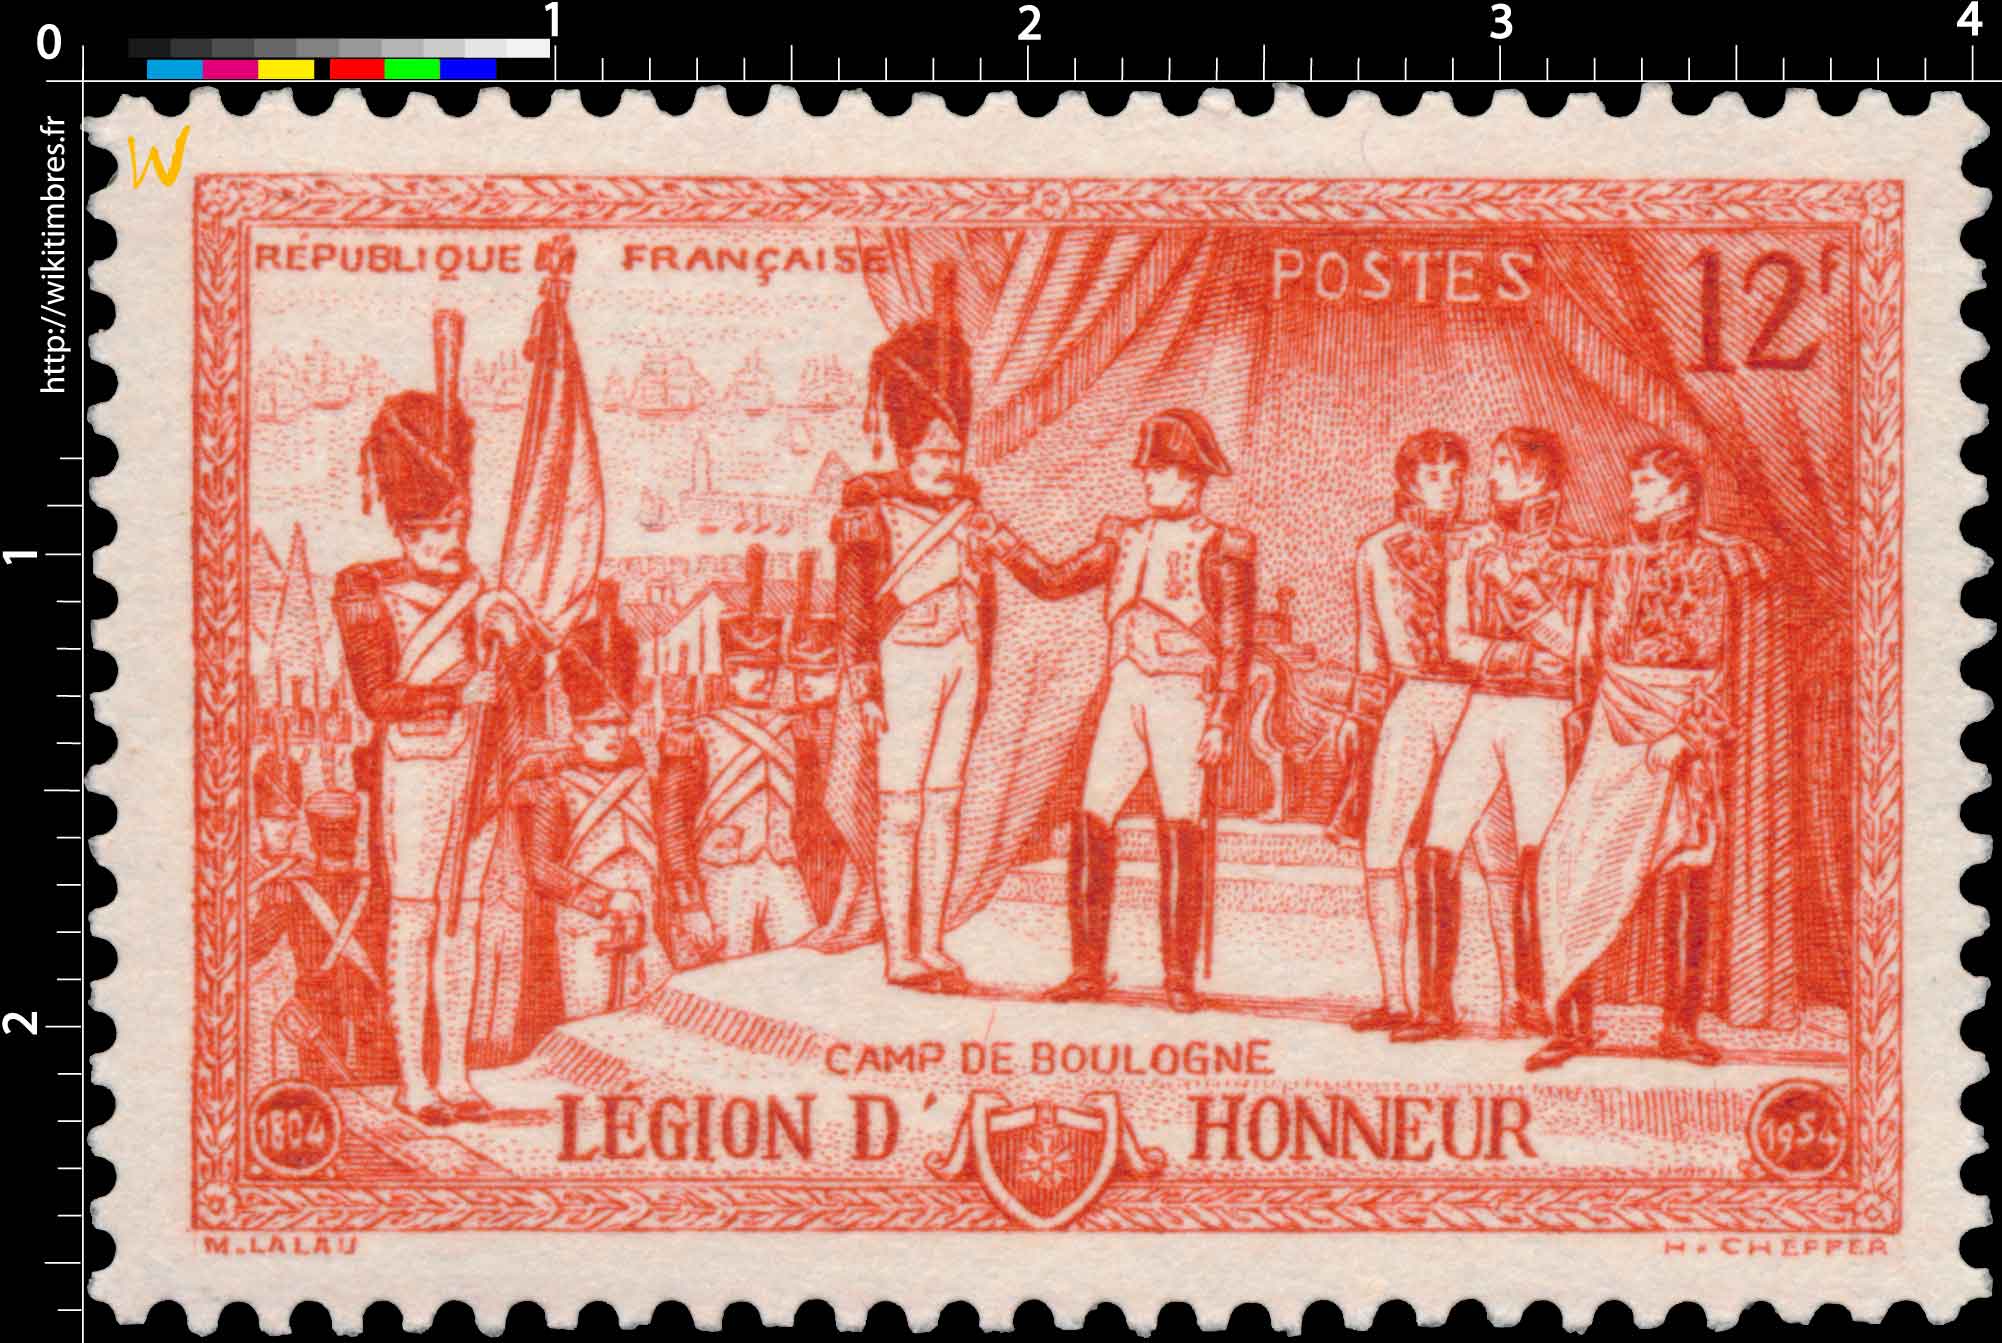 CAMP DE BOULOGNE LÉGION D’HONNEUR